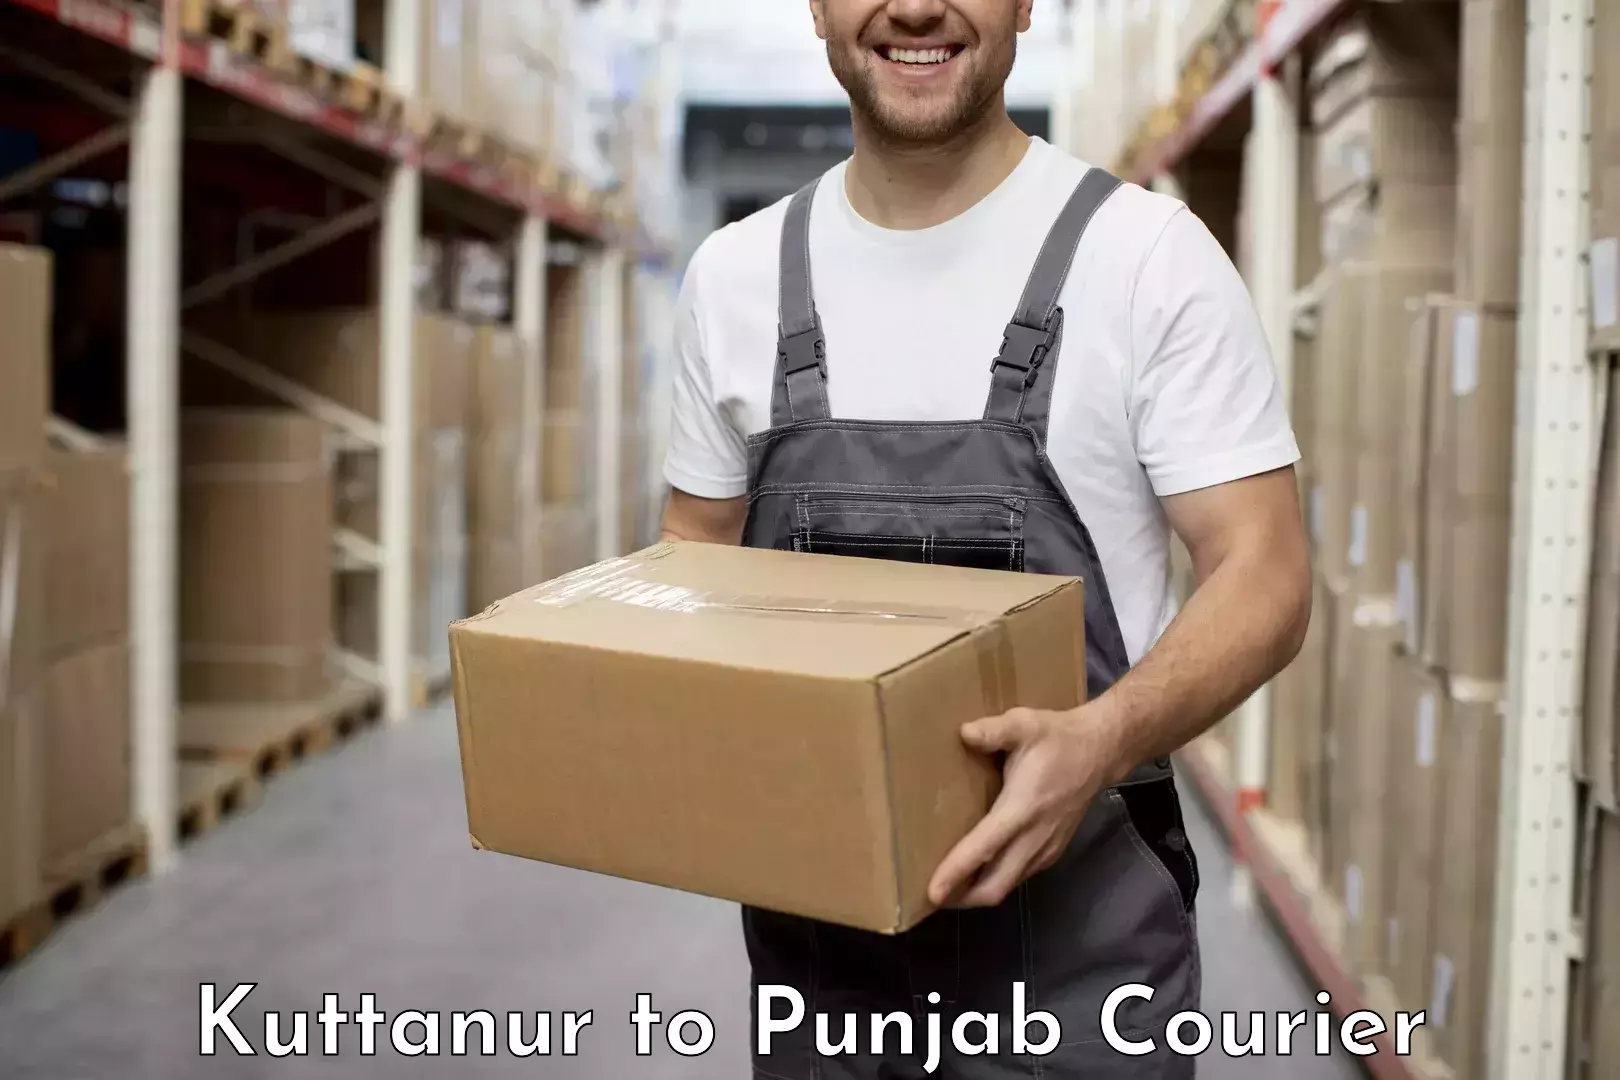 Efficient cargo services Kuttanur to Punjab